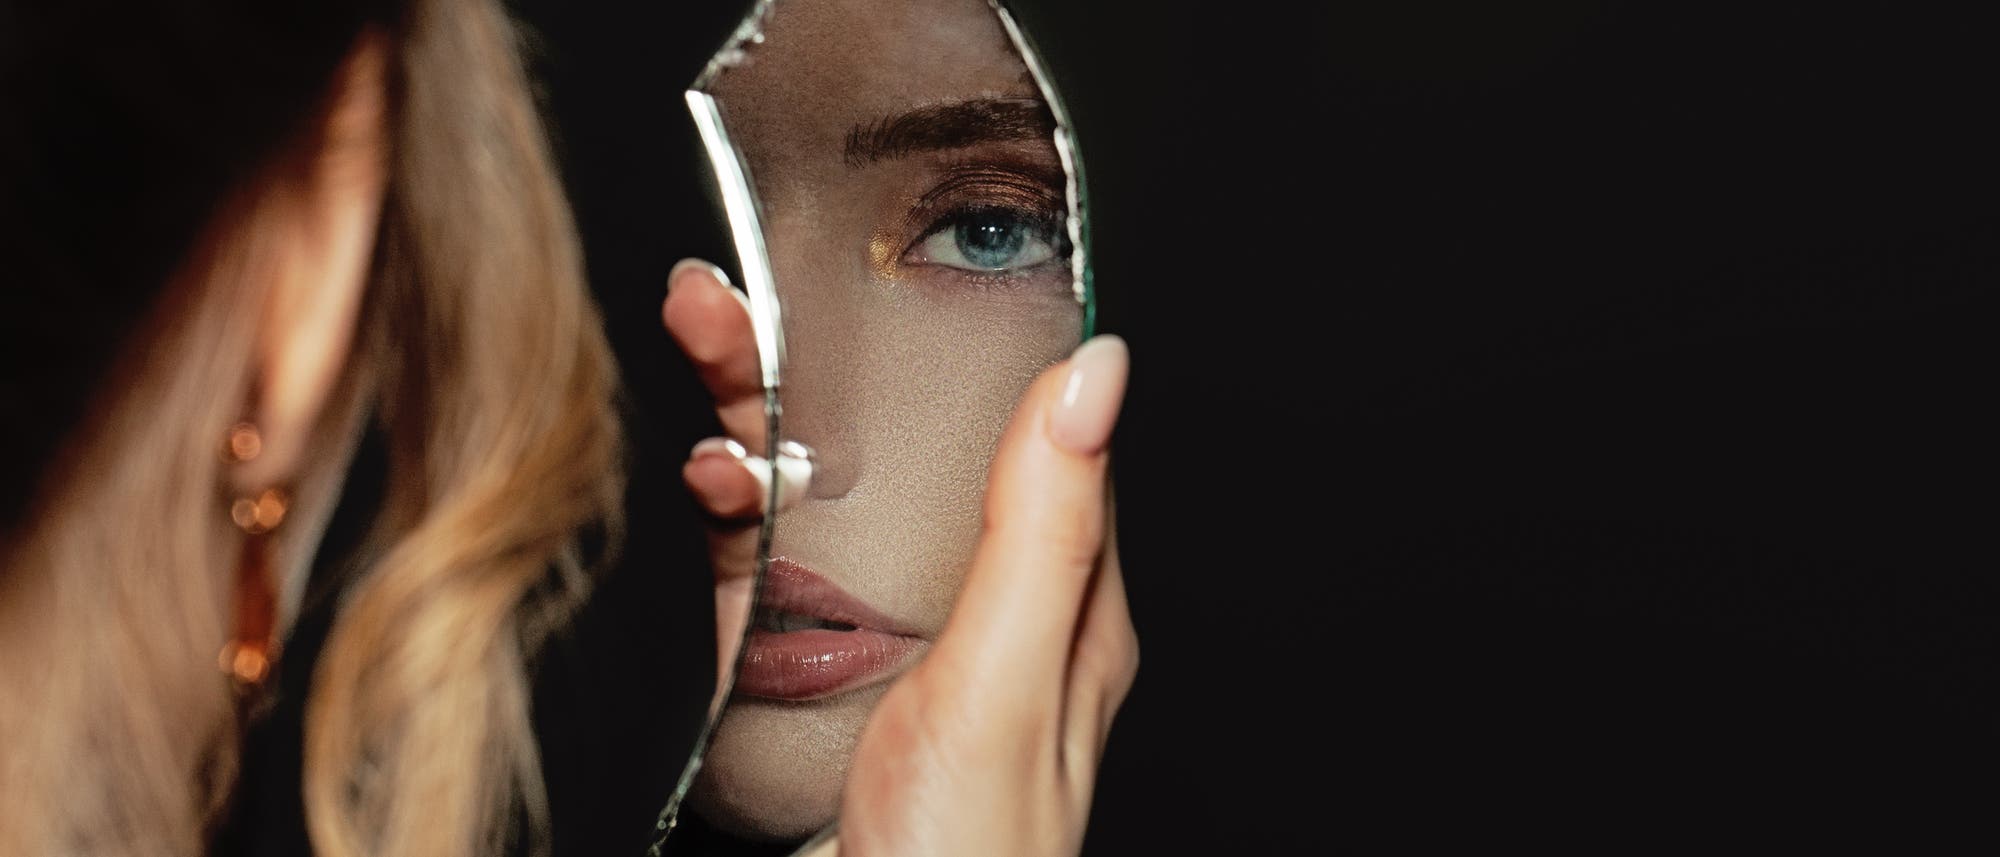 Frau schaut in zerbrochenen Spiegel